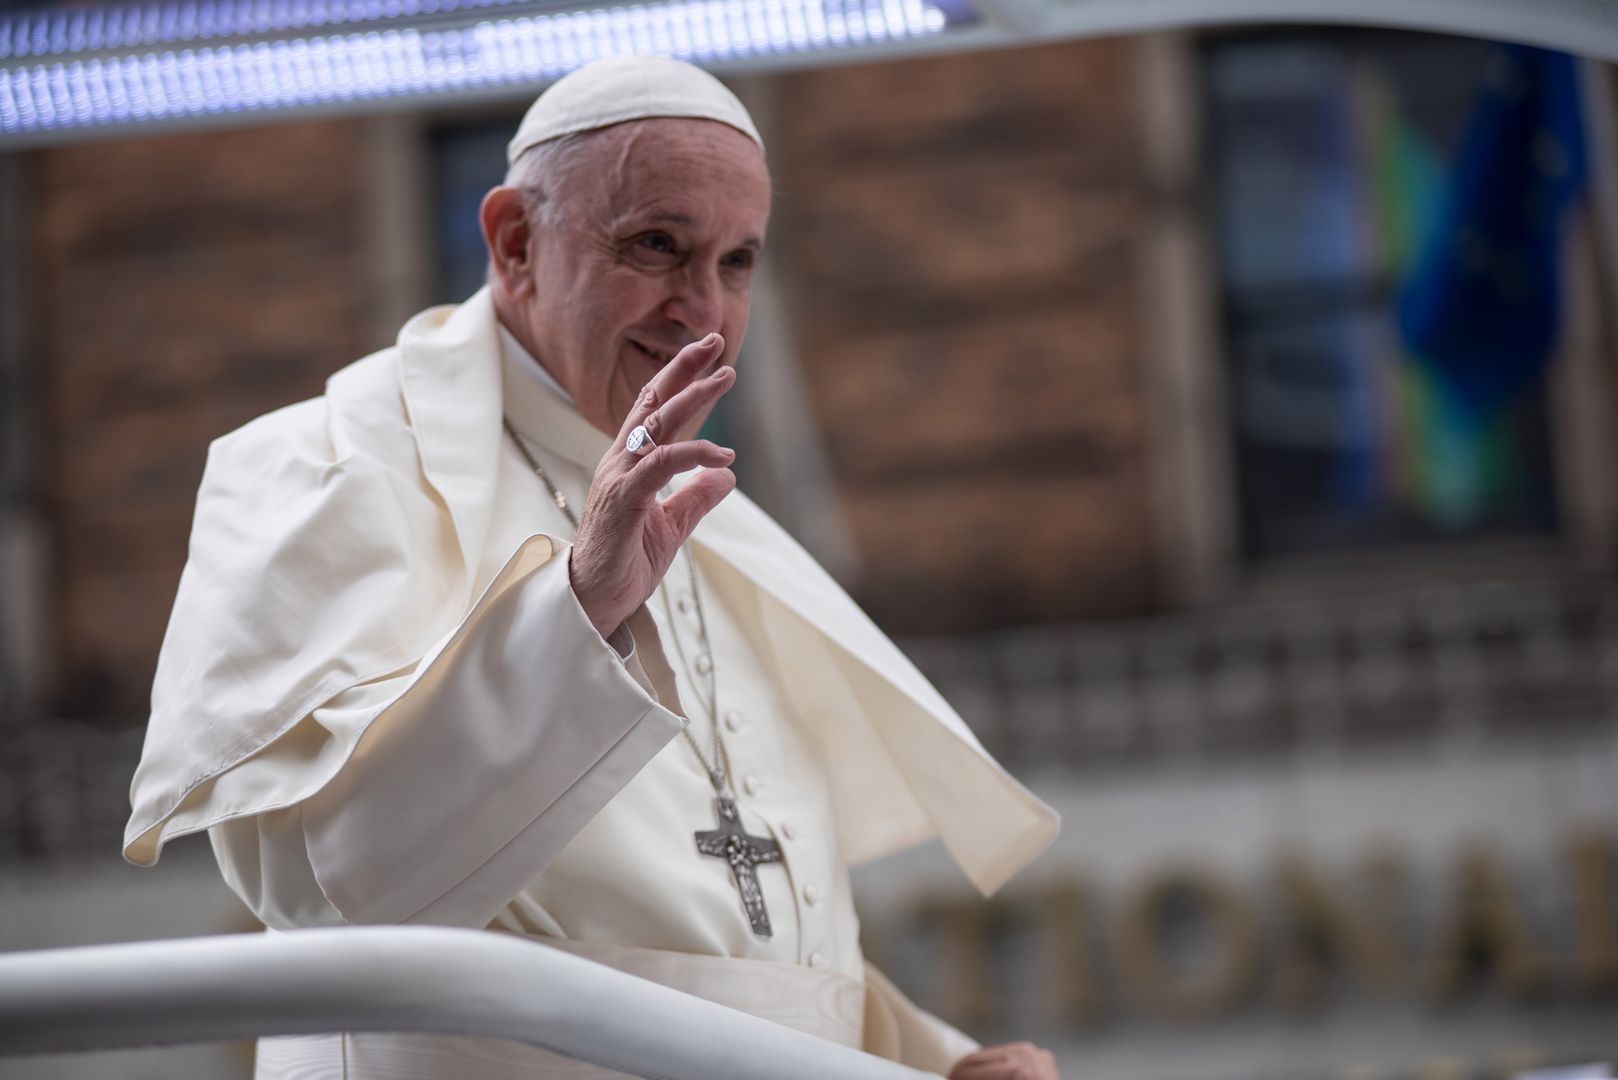 Konferencja prasowa papieża Franciszka: nie można ukrywać pedofilii, rodzice muszą o tym mówić